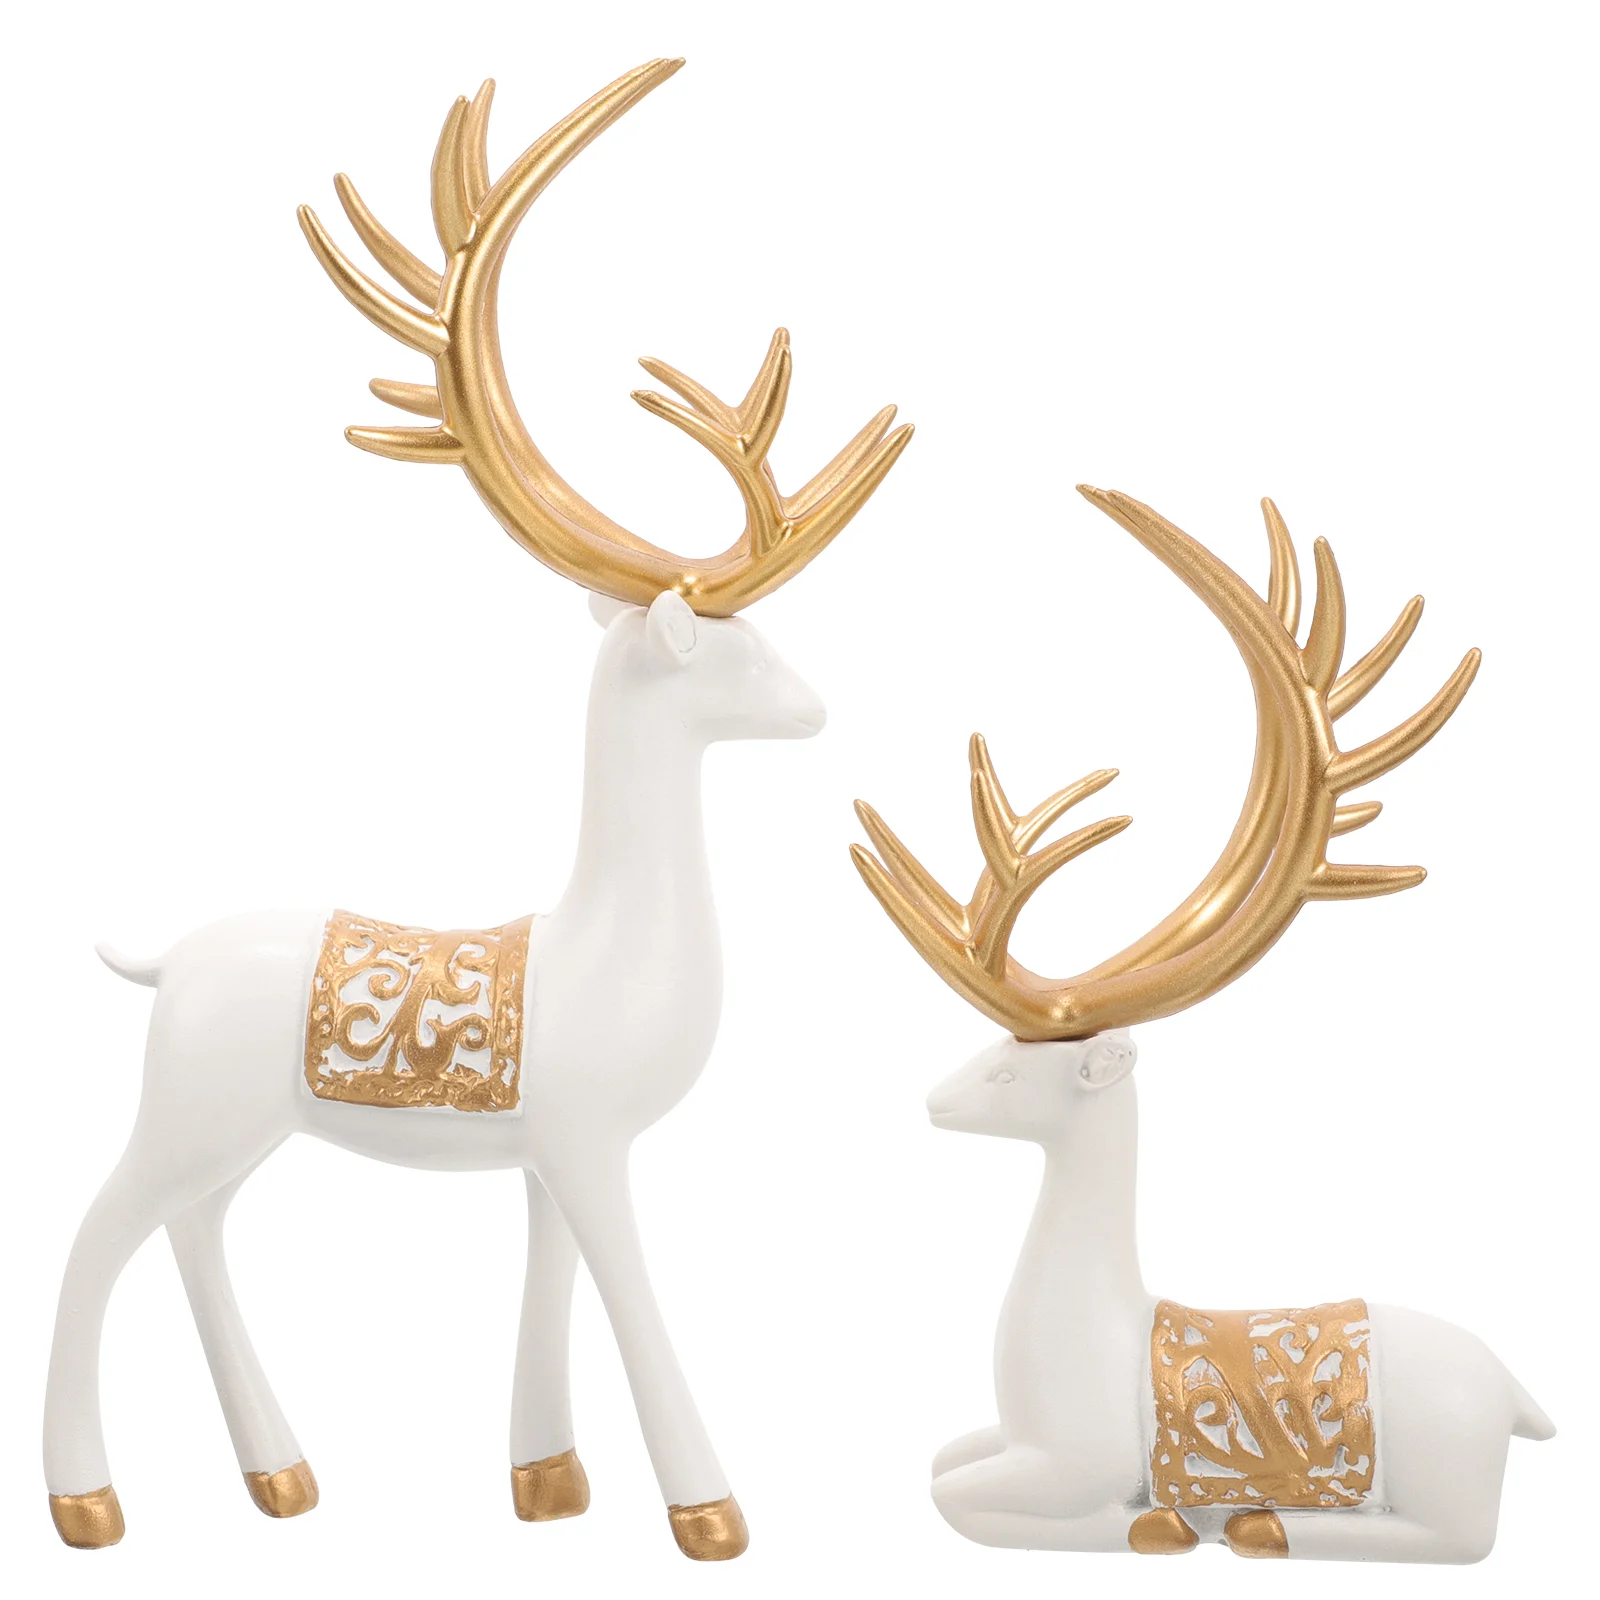 

Christmas Reindeer Figurines Resin Elk Sculpture Sitting Standing Deer Statues Xmas Tabletop Ornaments